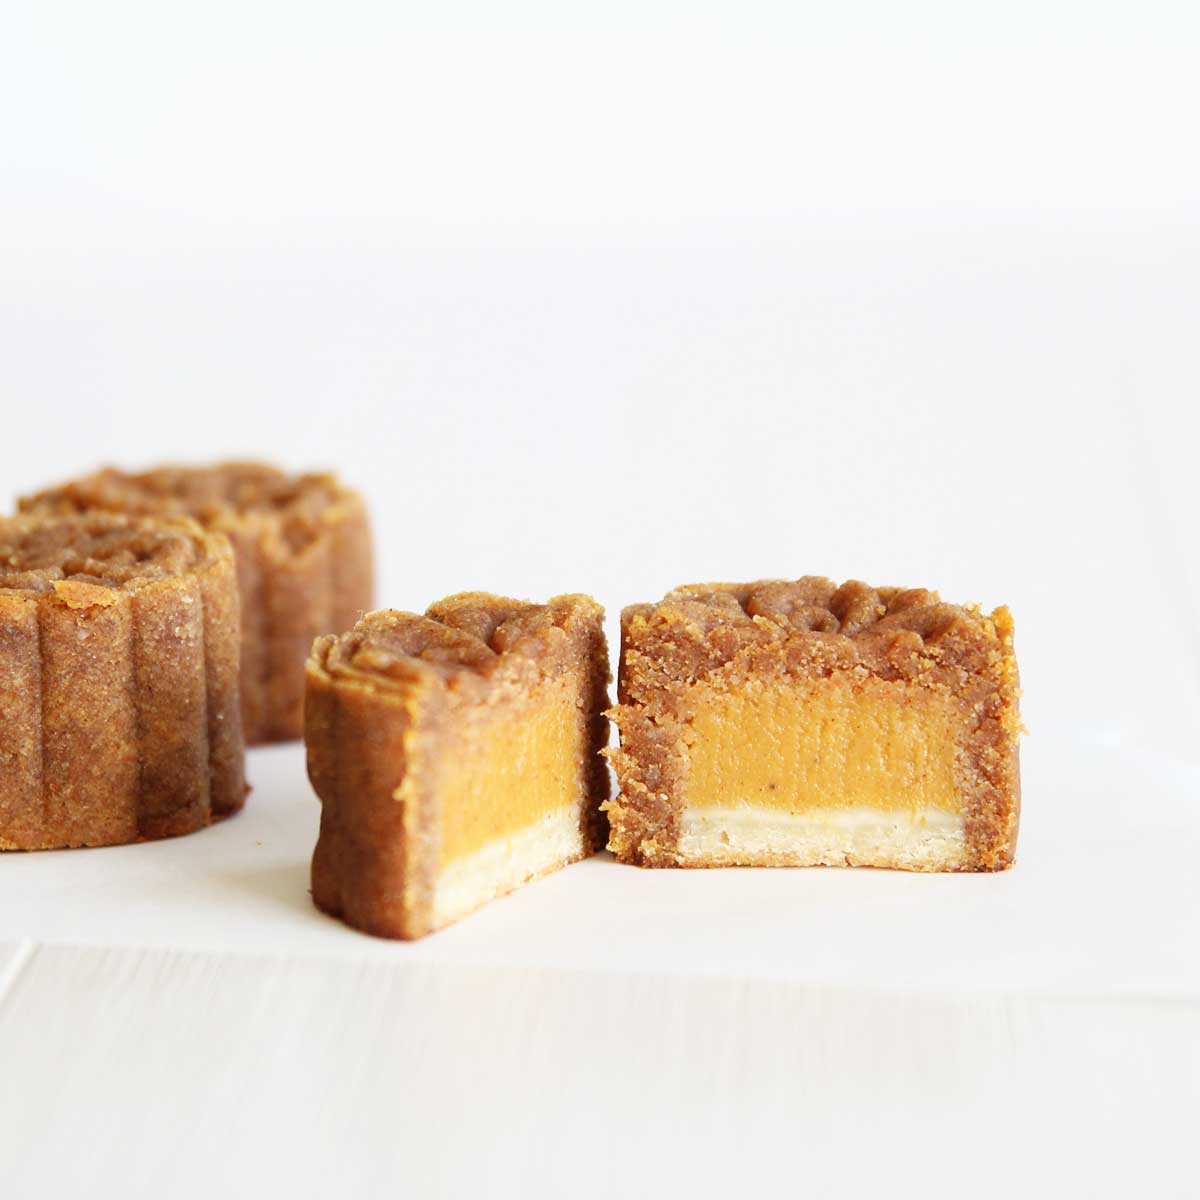 Pumpkin Pie Mooncakes made with Almond Flour - Flourless Pumpkin Roll Cake